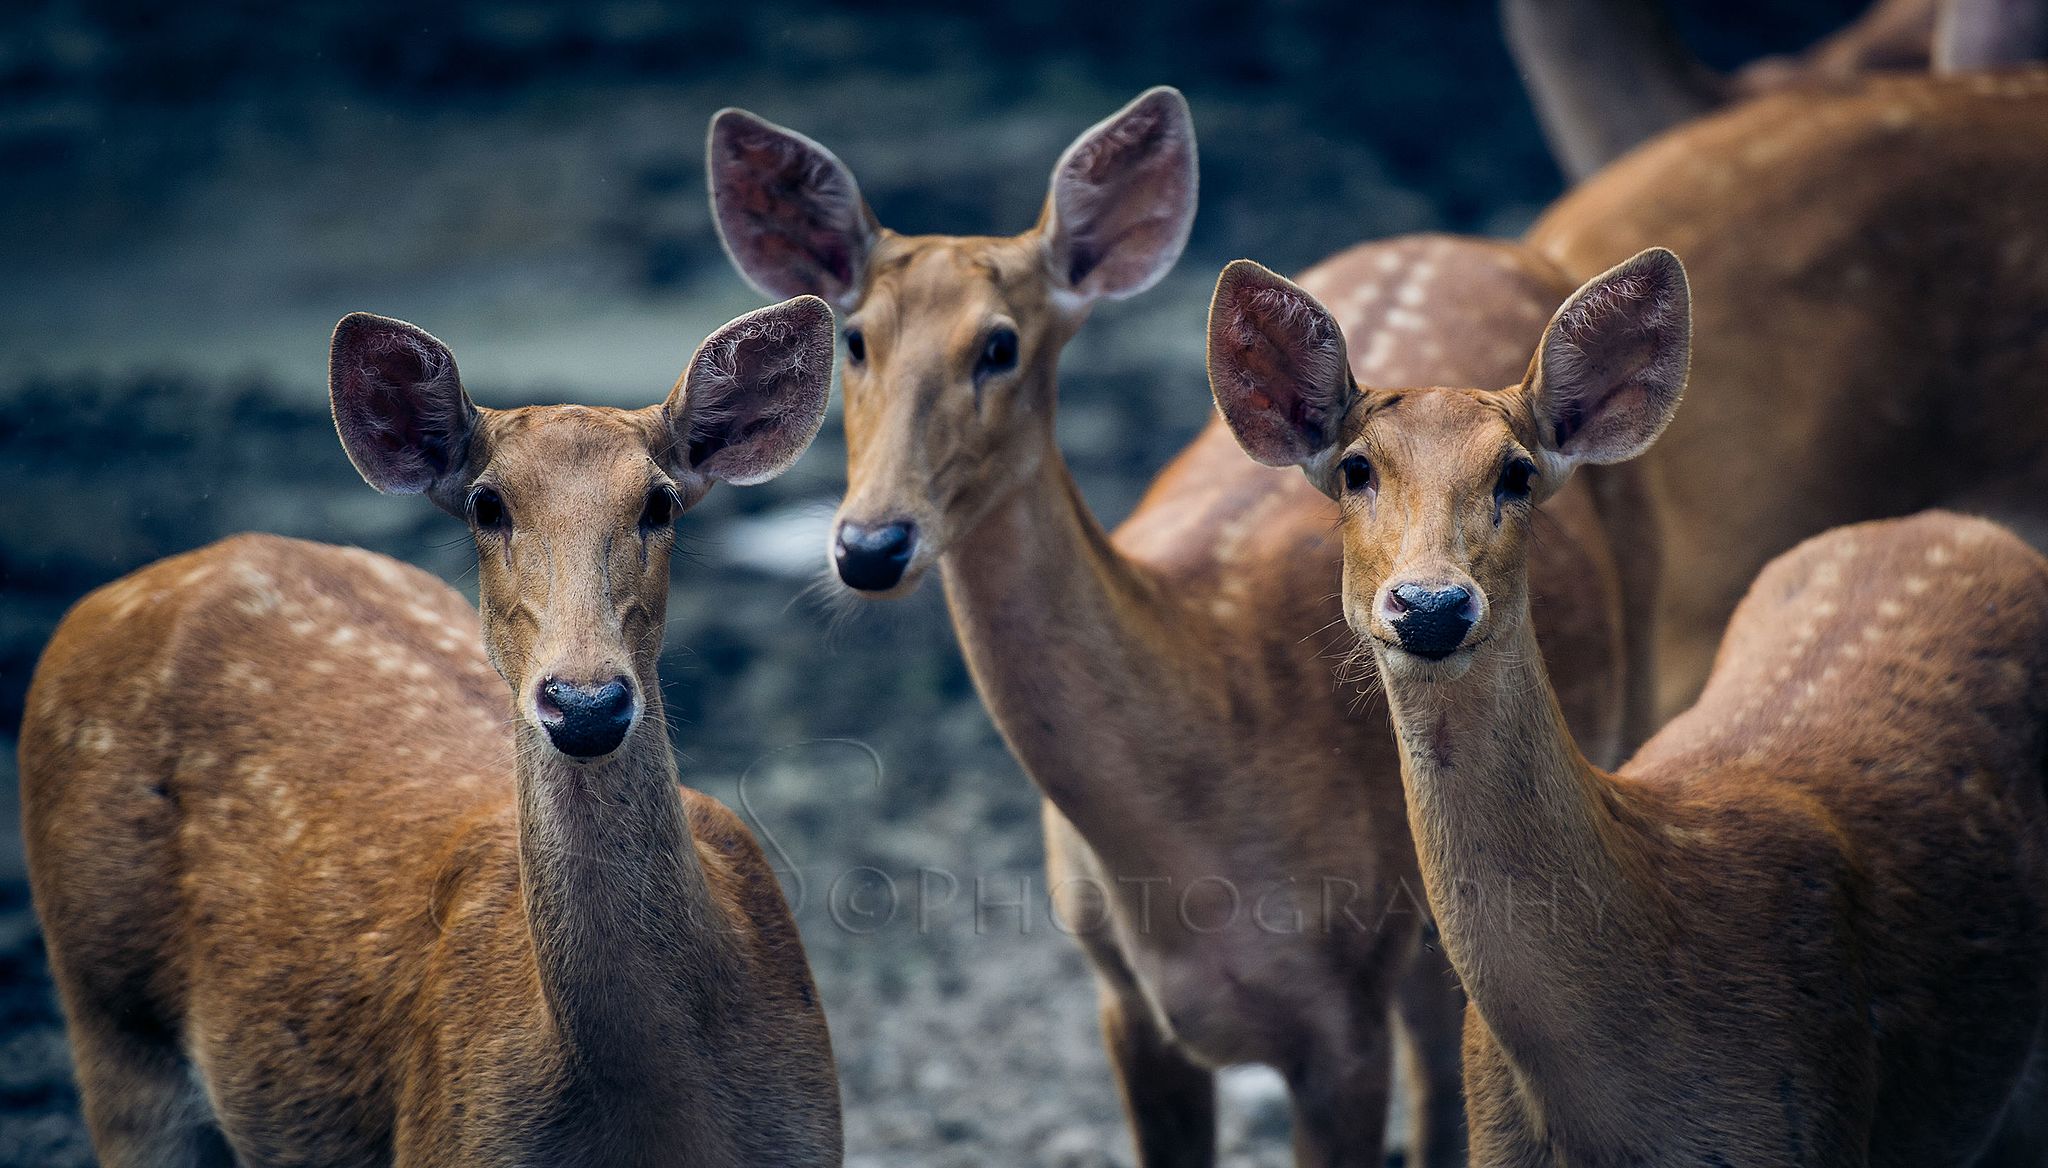 Deer in Dudhwa National Park, Terai, Uttar Pradesh, India Photo © Abhishek Shastri